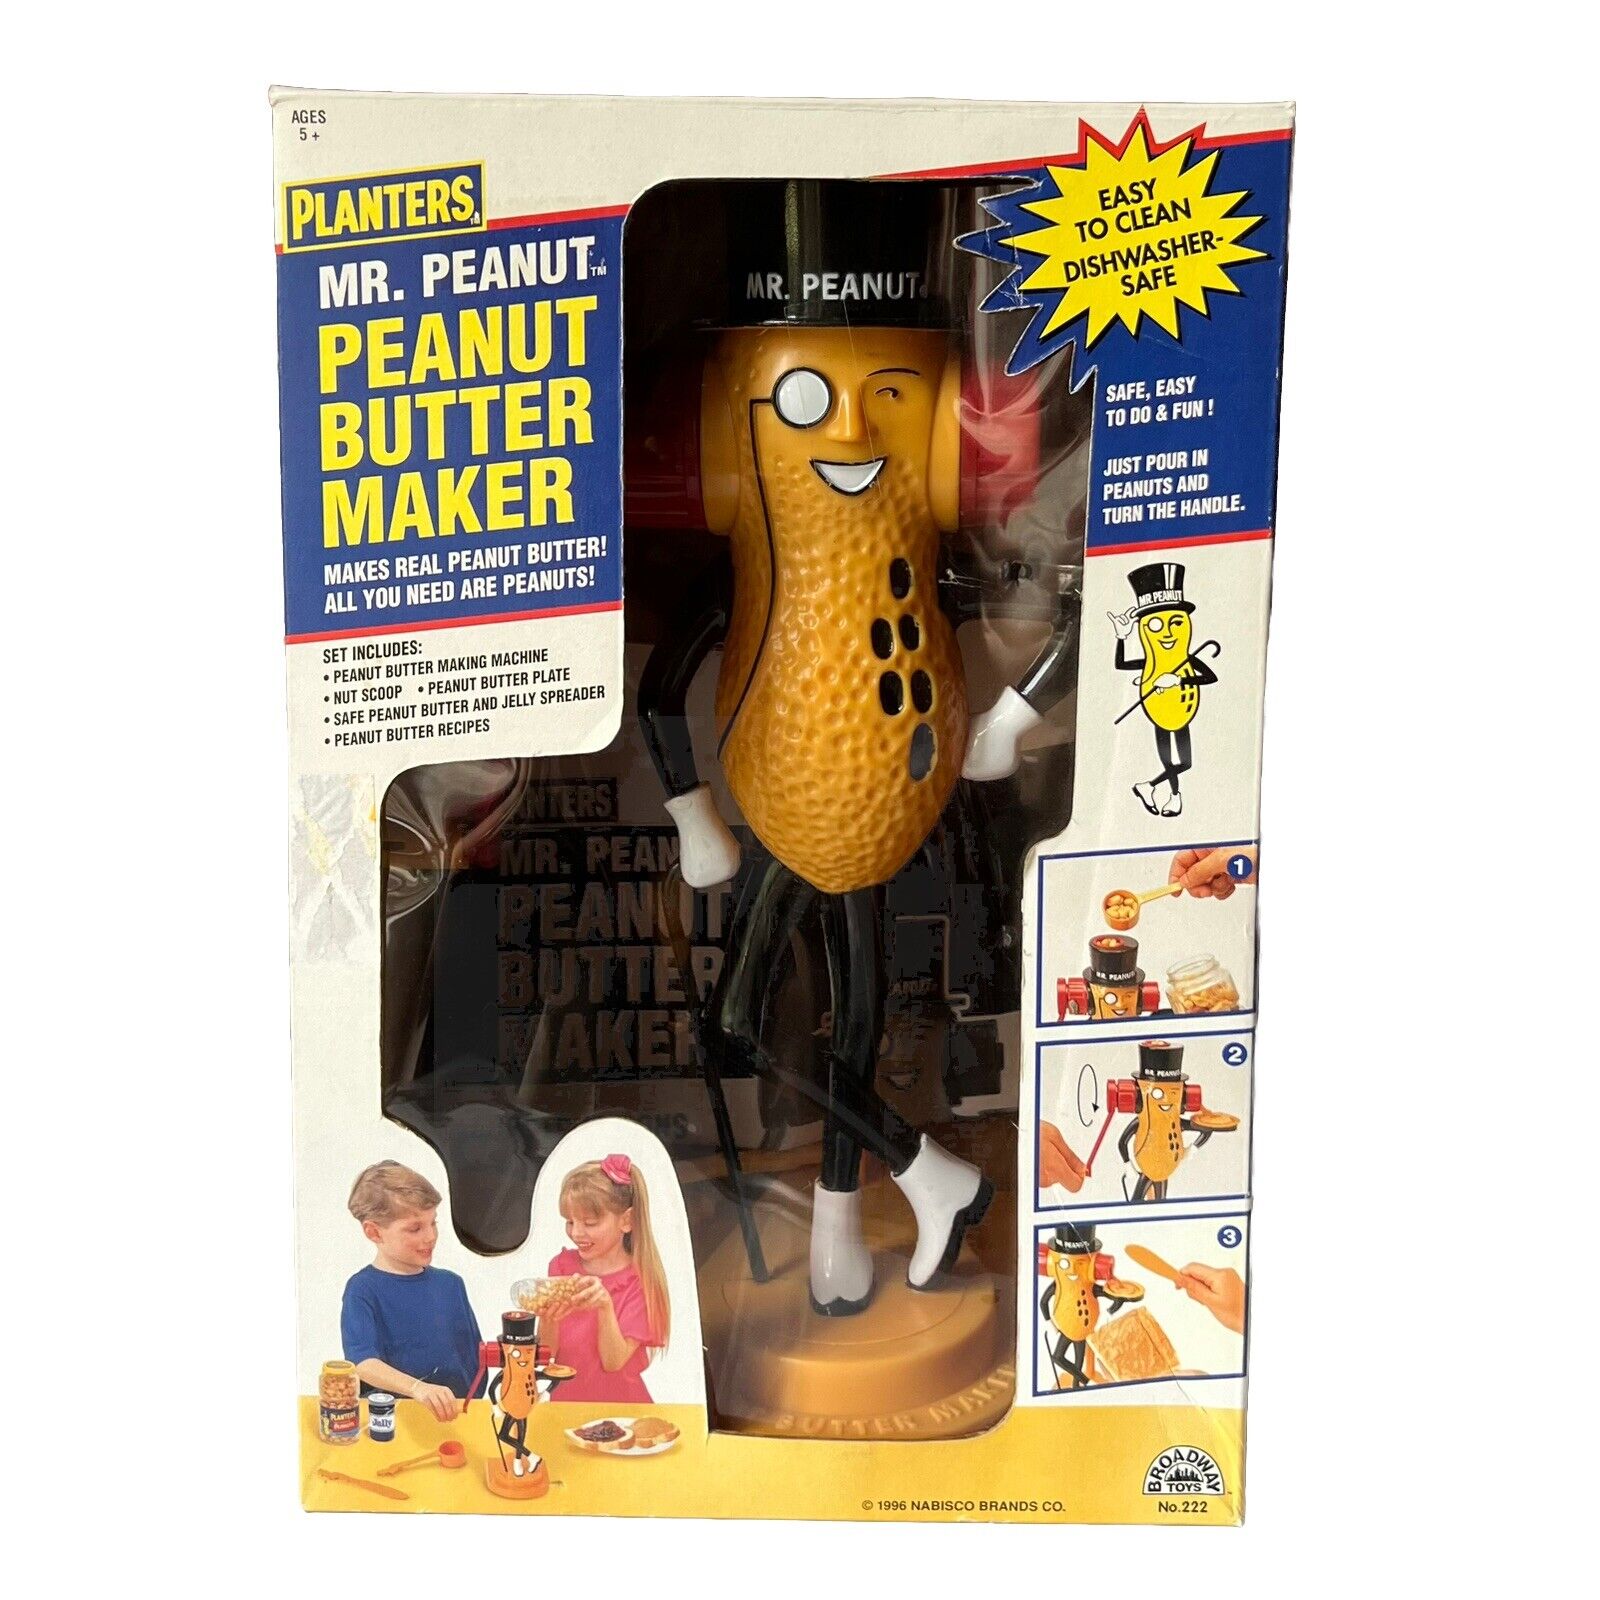 Mr. Peanut Peanut Butter Maker In Box Vintage 1996 Nabisco No. 222 Planters  